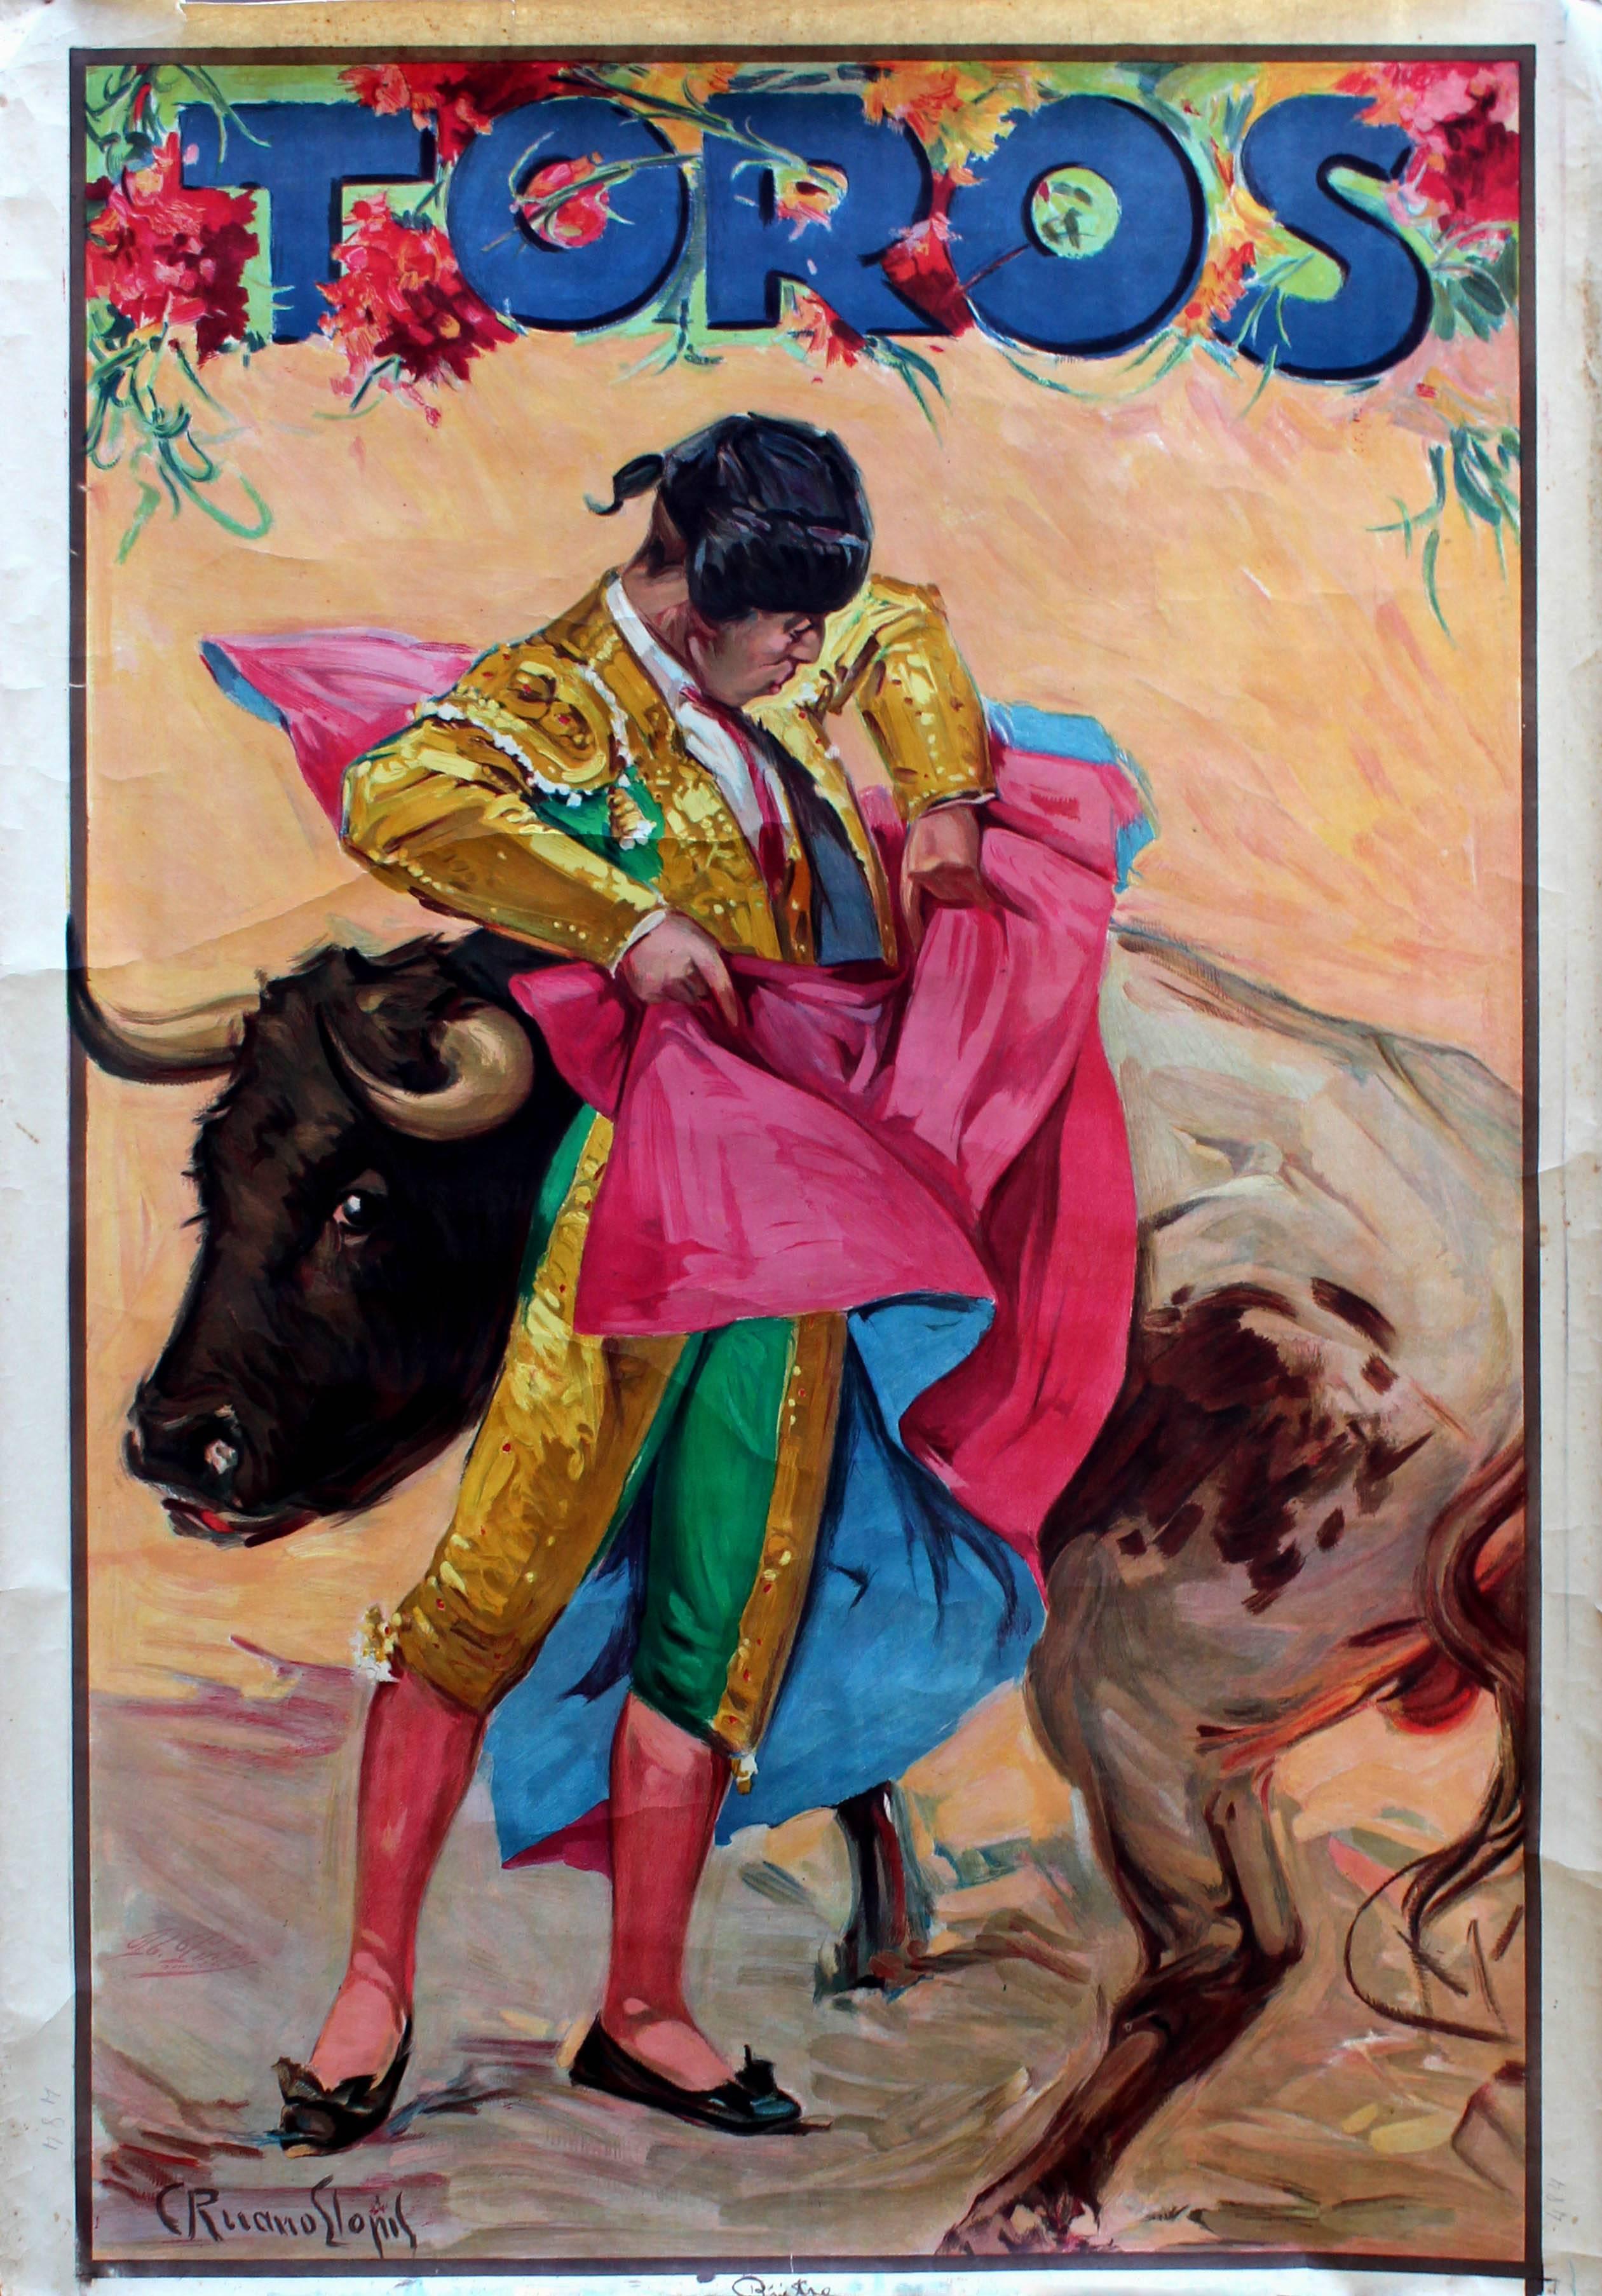 Carlos Ruano Llopis Print - Original Vintage 1920s Toros Advertising Poster - Bull And Toreador Bullfighter